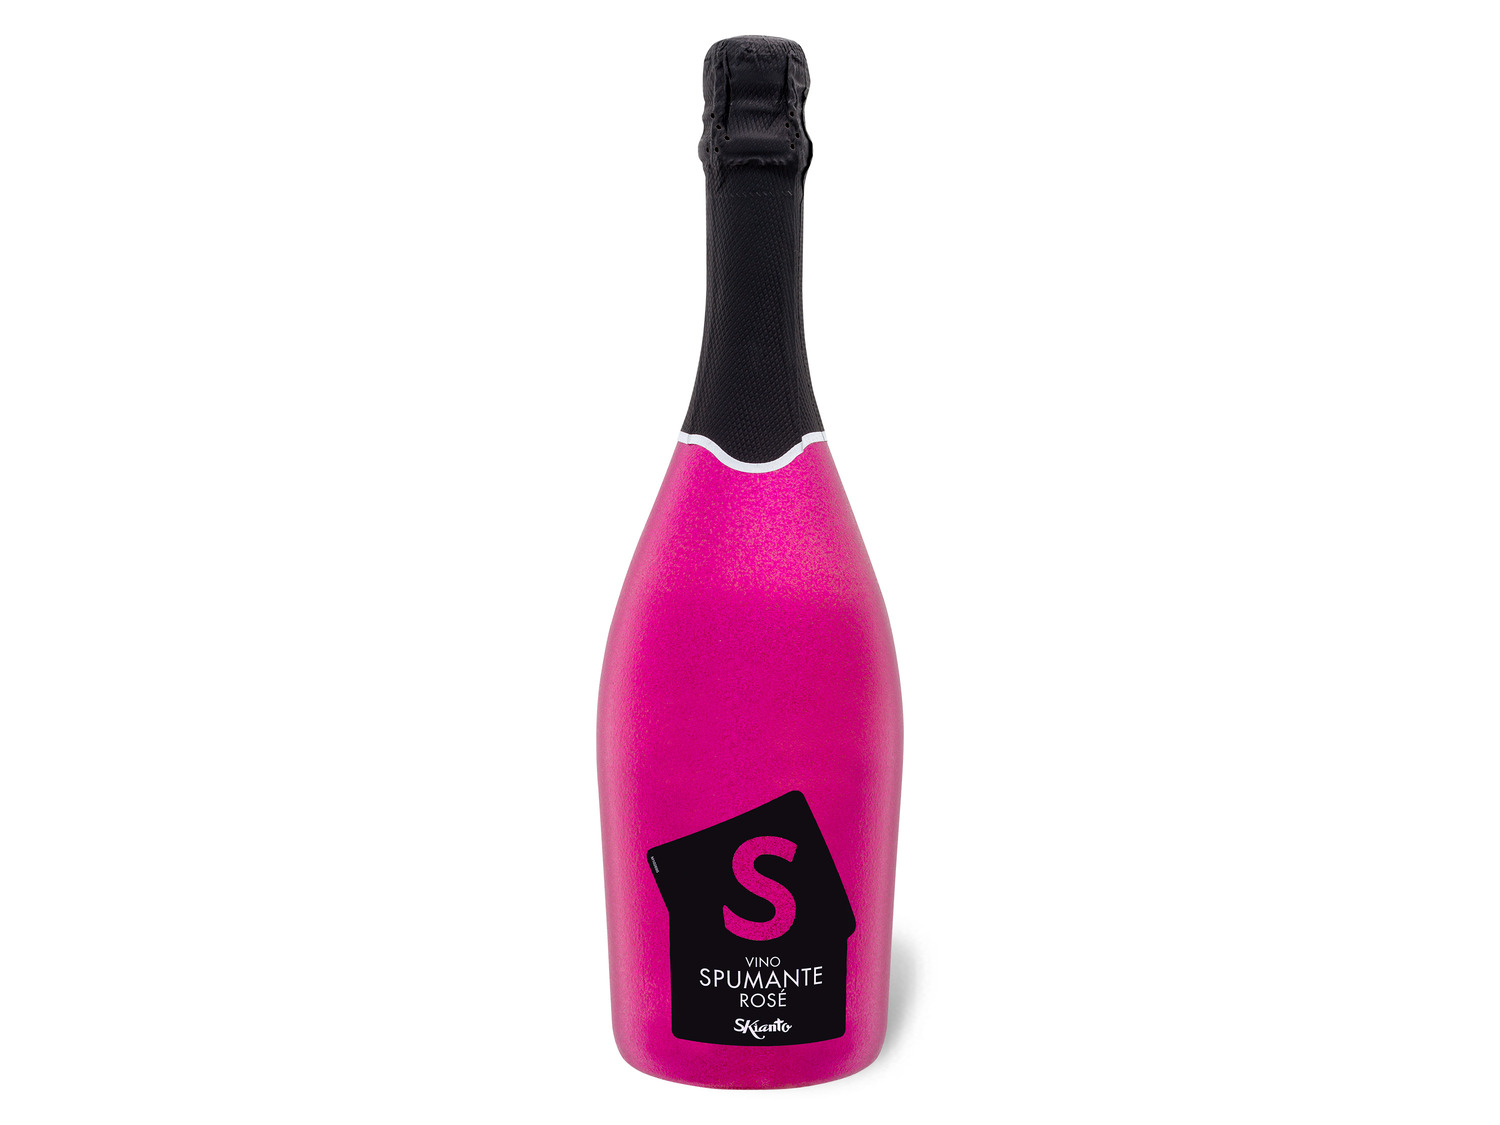 Schaumwein Vino Rosé extra Skianto dry, 2021 Spumante